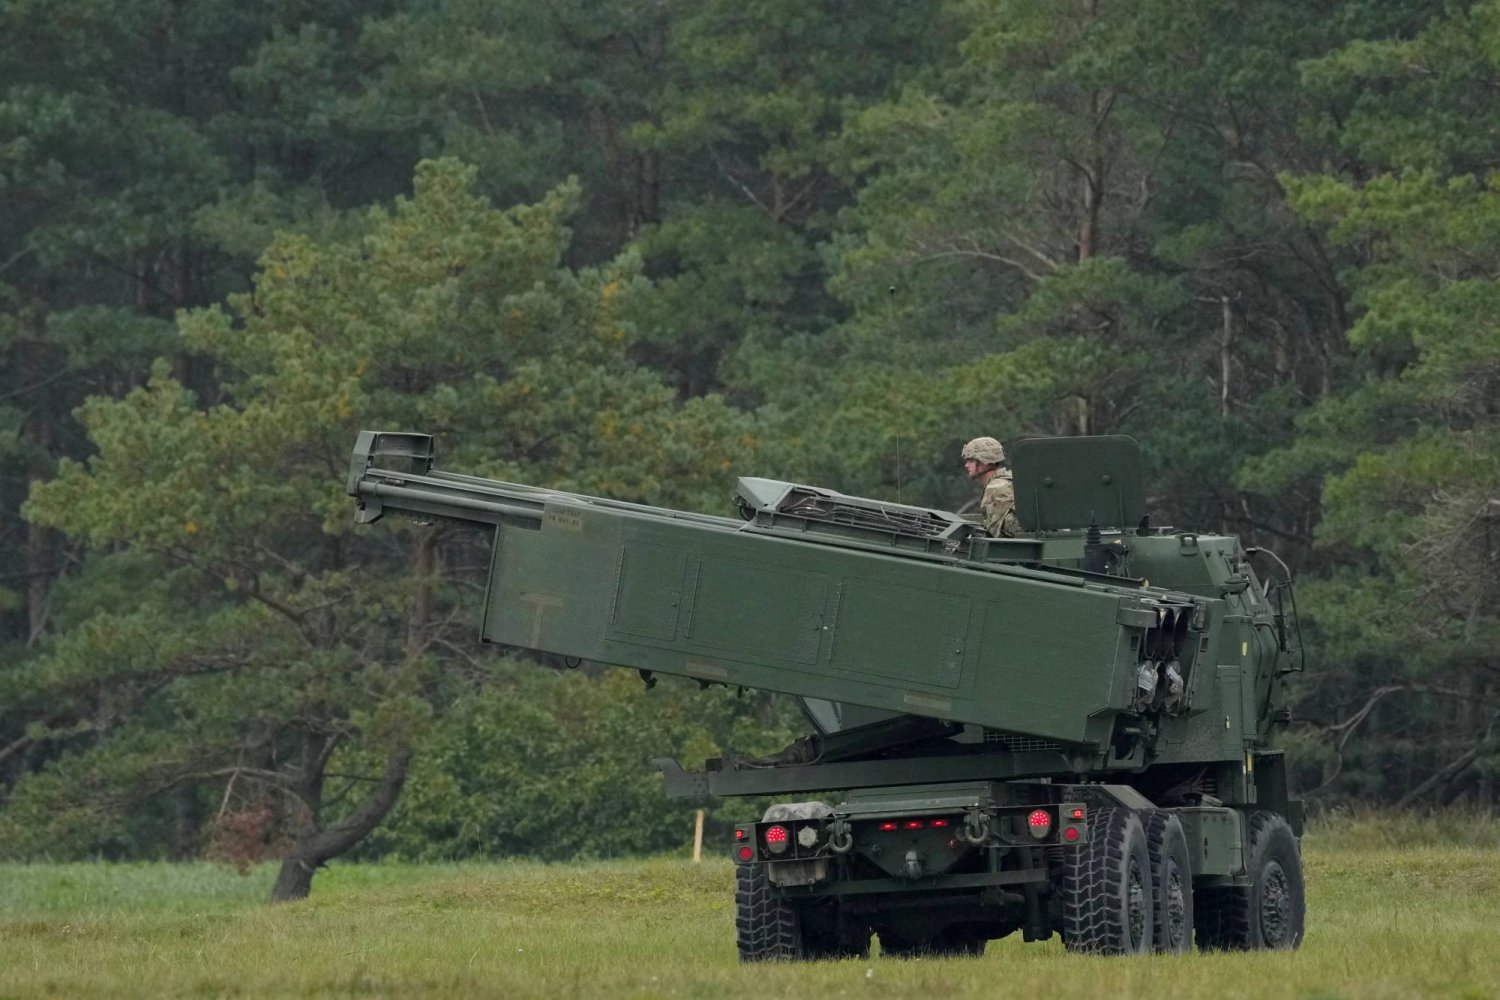 نظام صاروخي مدفعي عالي الحركة M142 (HIMARS) أميركي الصنع يشارك في مناورة عسكرية بالقرب من ليباجا، لاتفيا، 26 سبتمبر 2022 (رويترز)